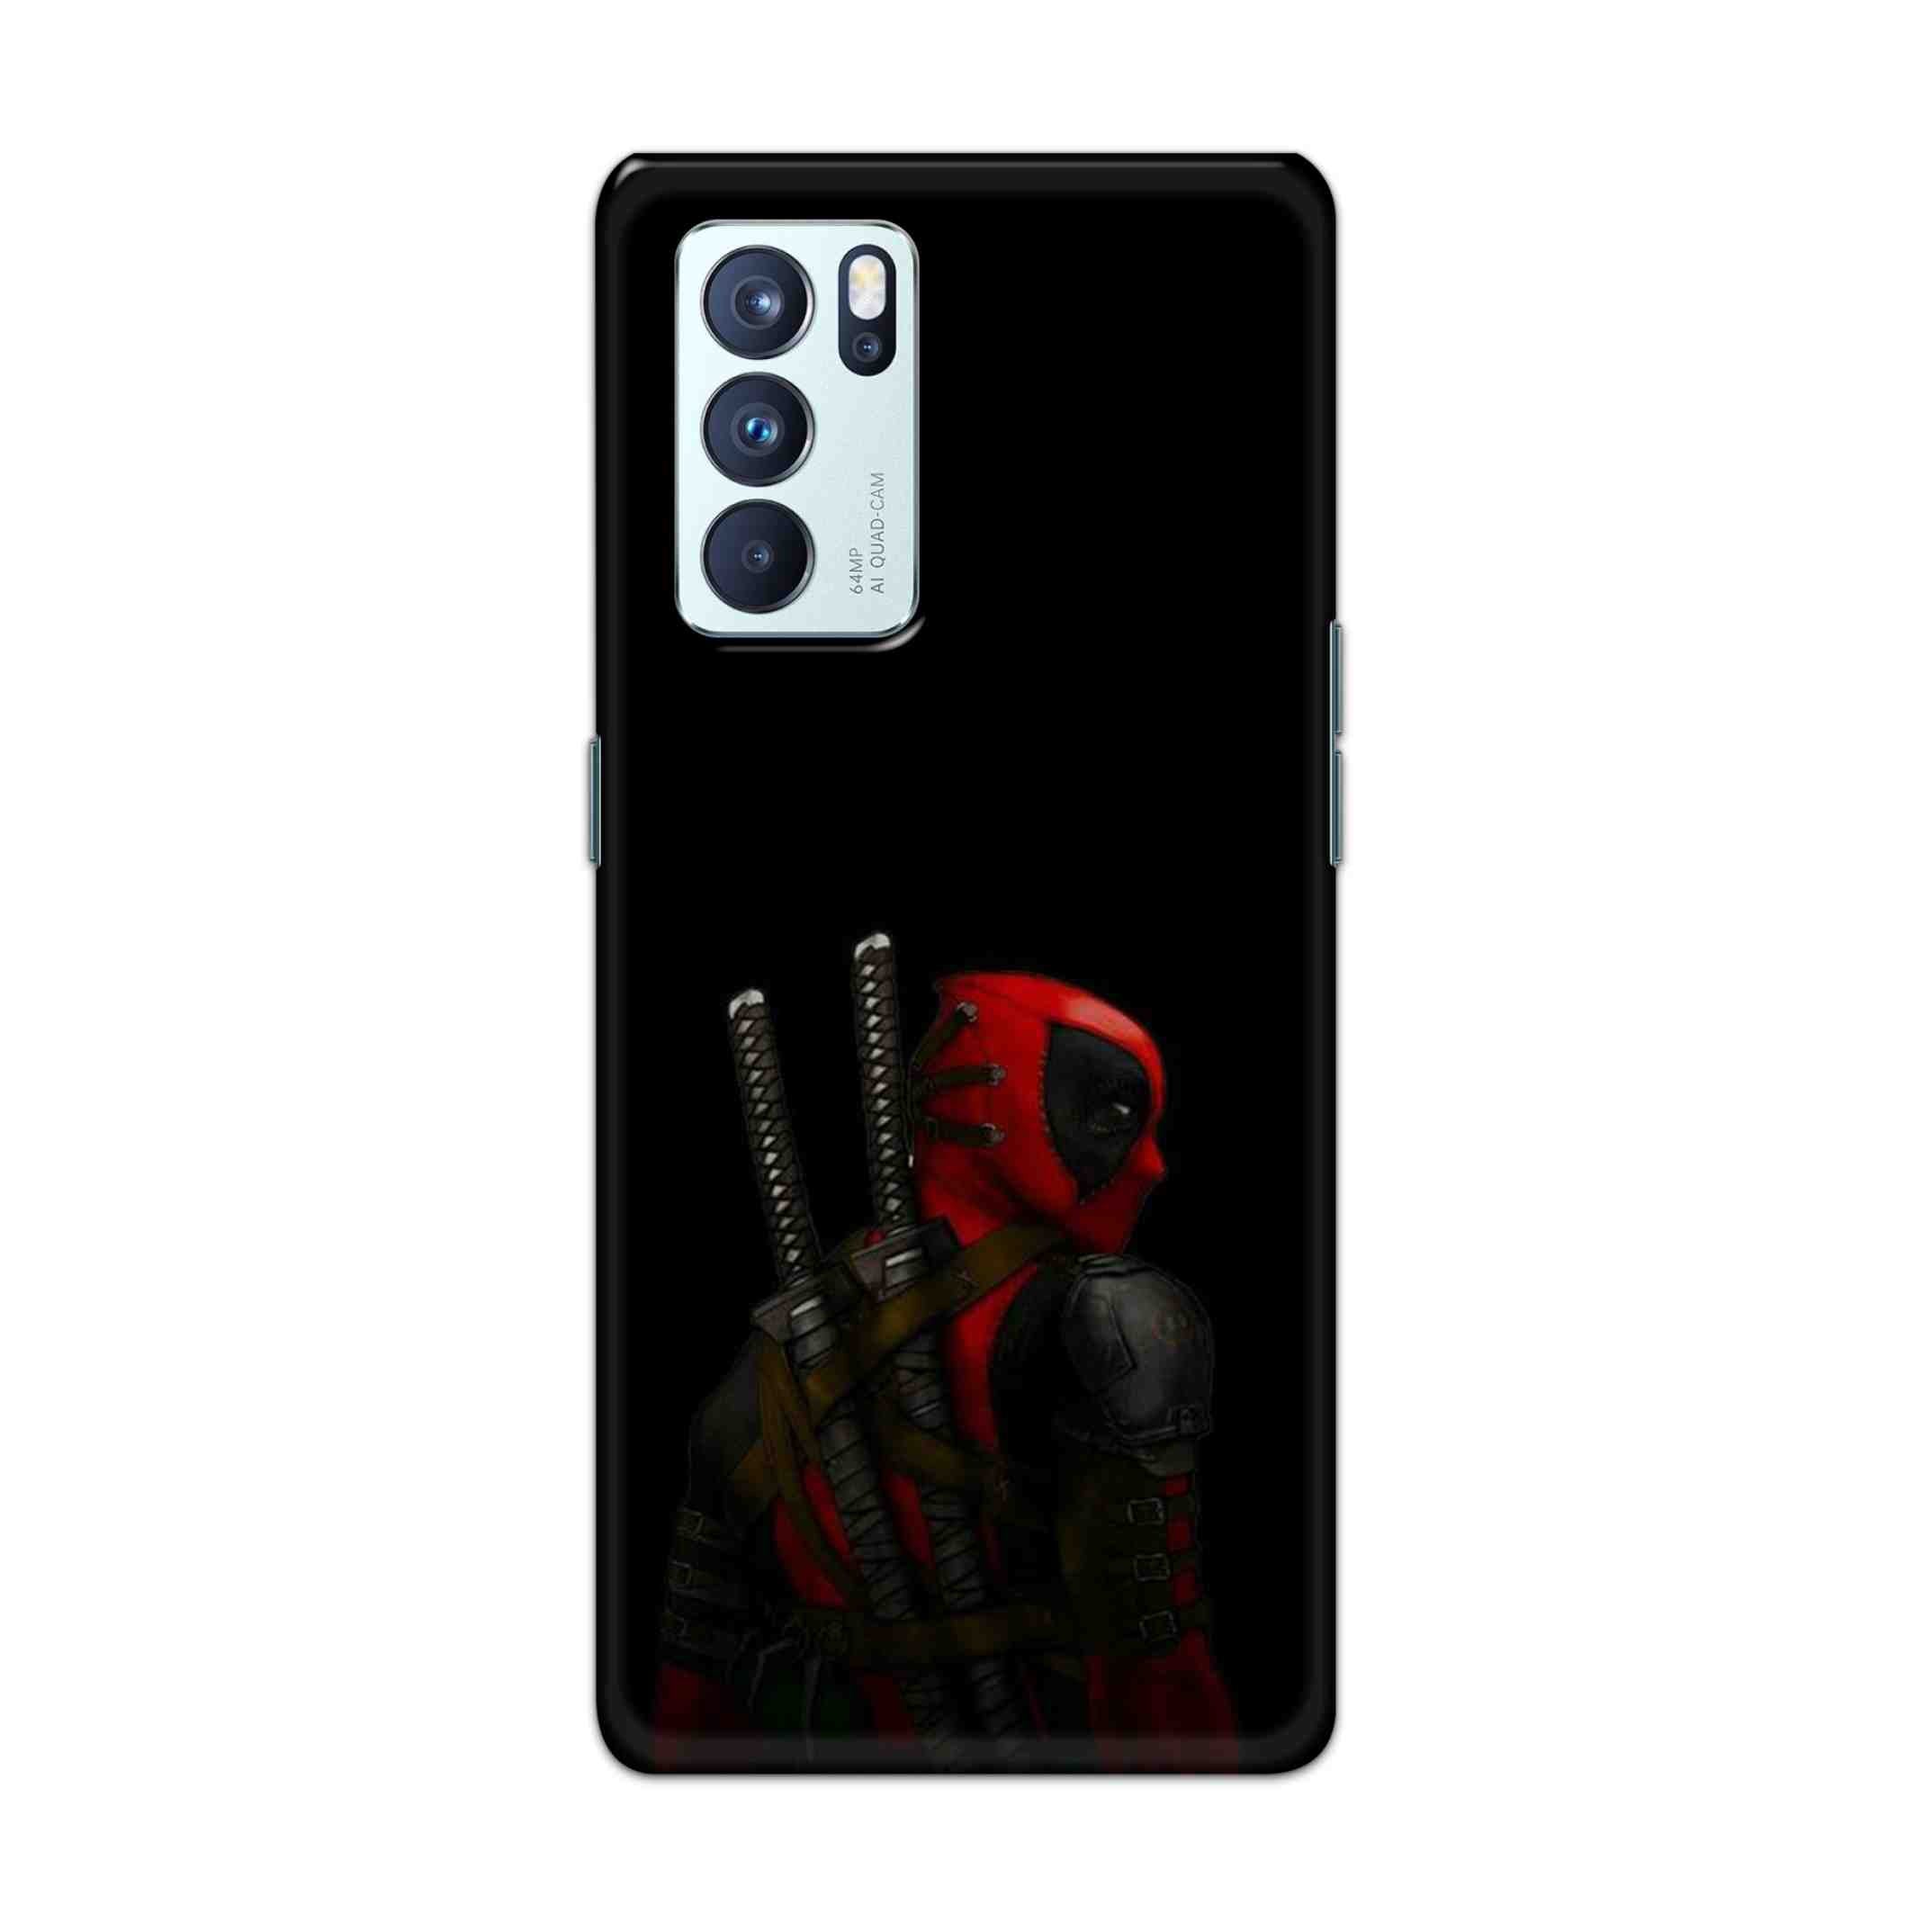 Buy Deadpool Hard Back Mobile Phone Case Cover For OPPO Reno 6 Pro 5G Online